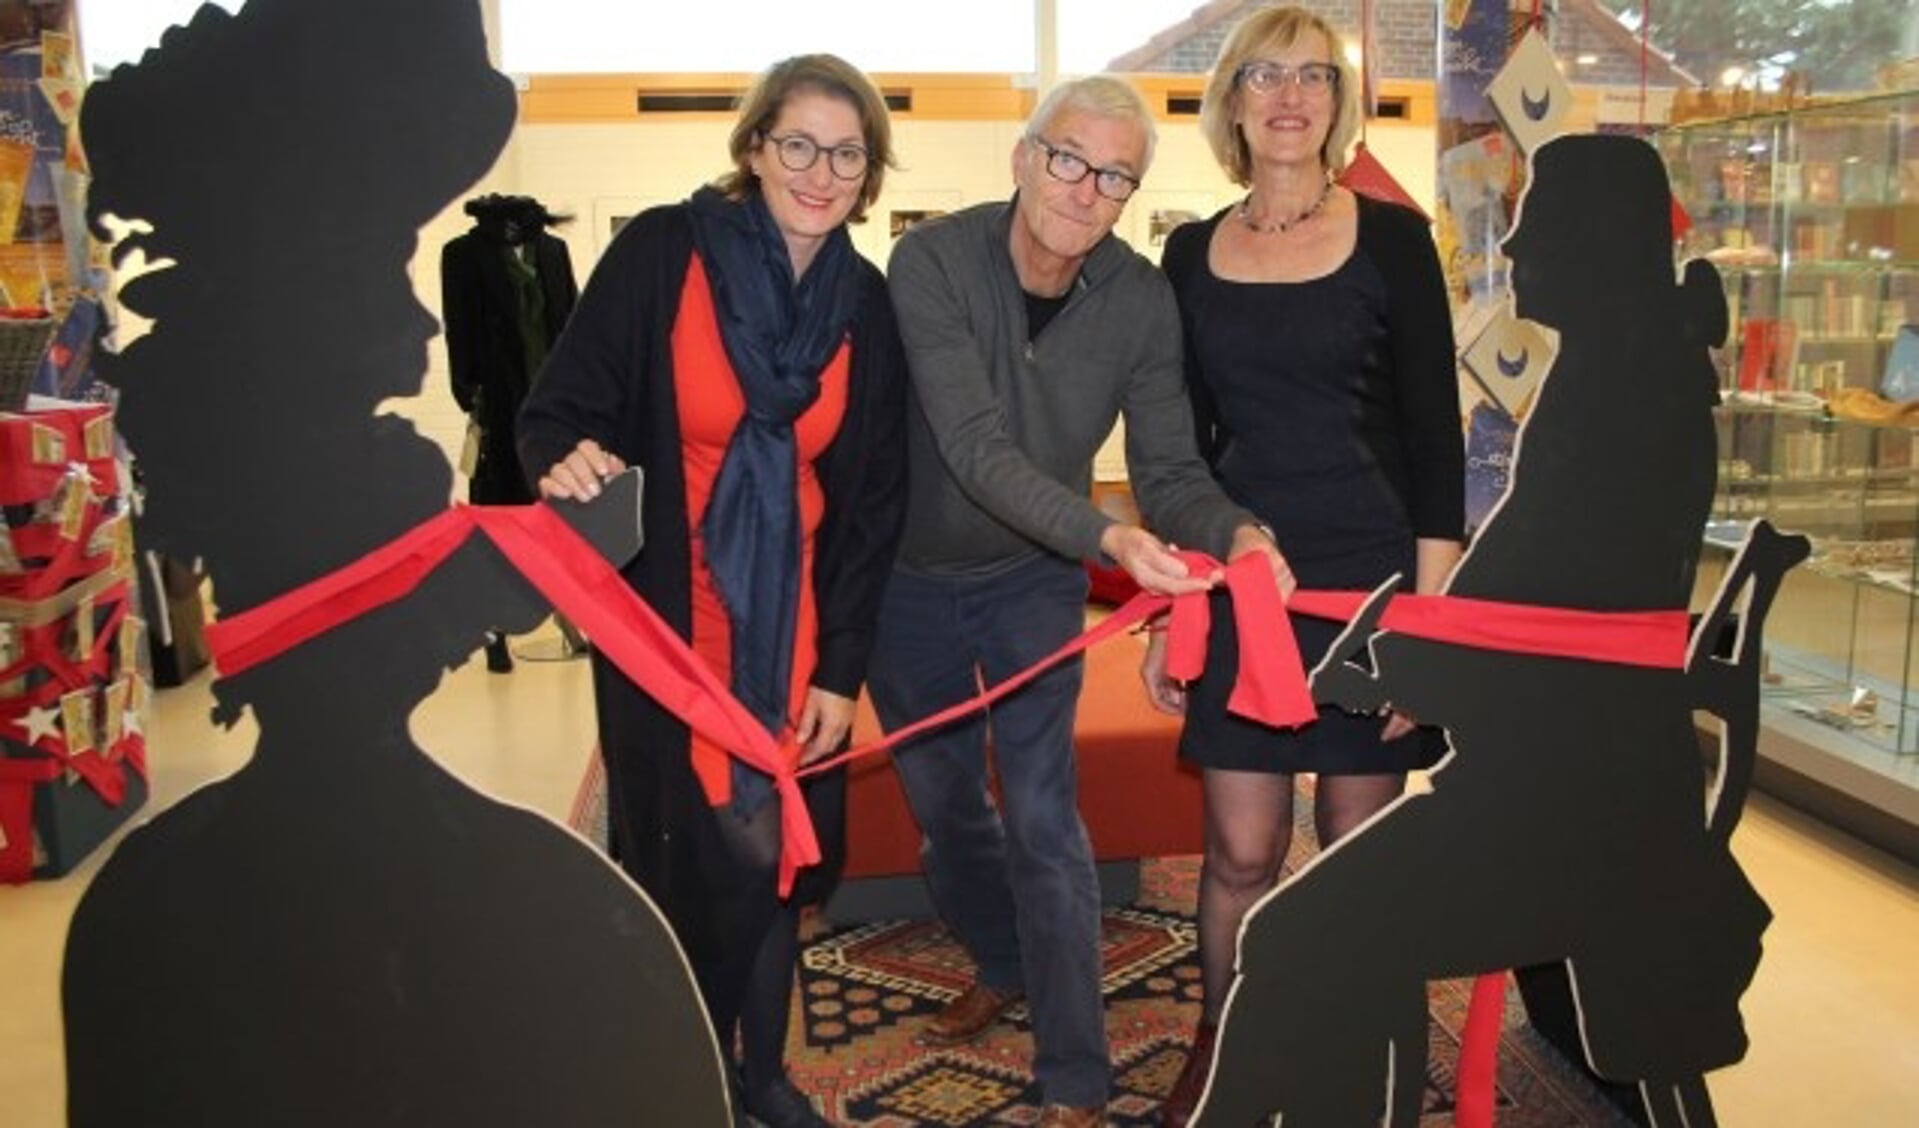 De makers van de tentoonstelling willen ook zelf het lintje nog wel een keer doorknippen. (Foto: Lysette Verwegen)